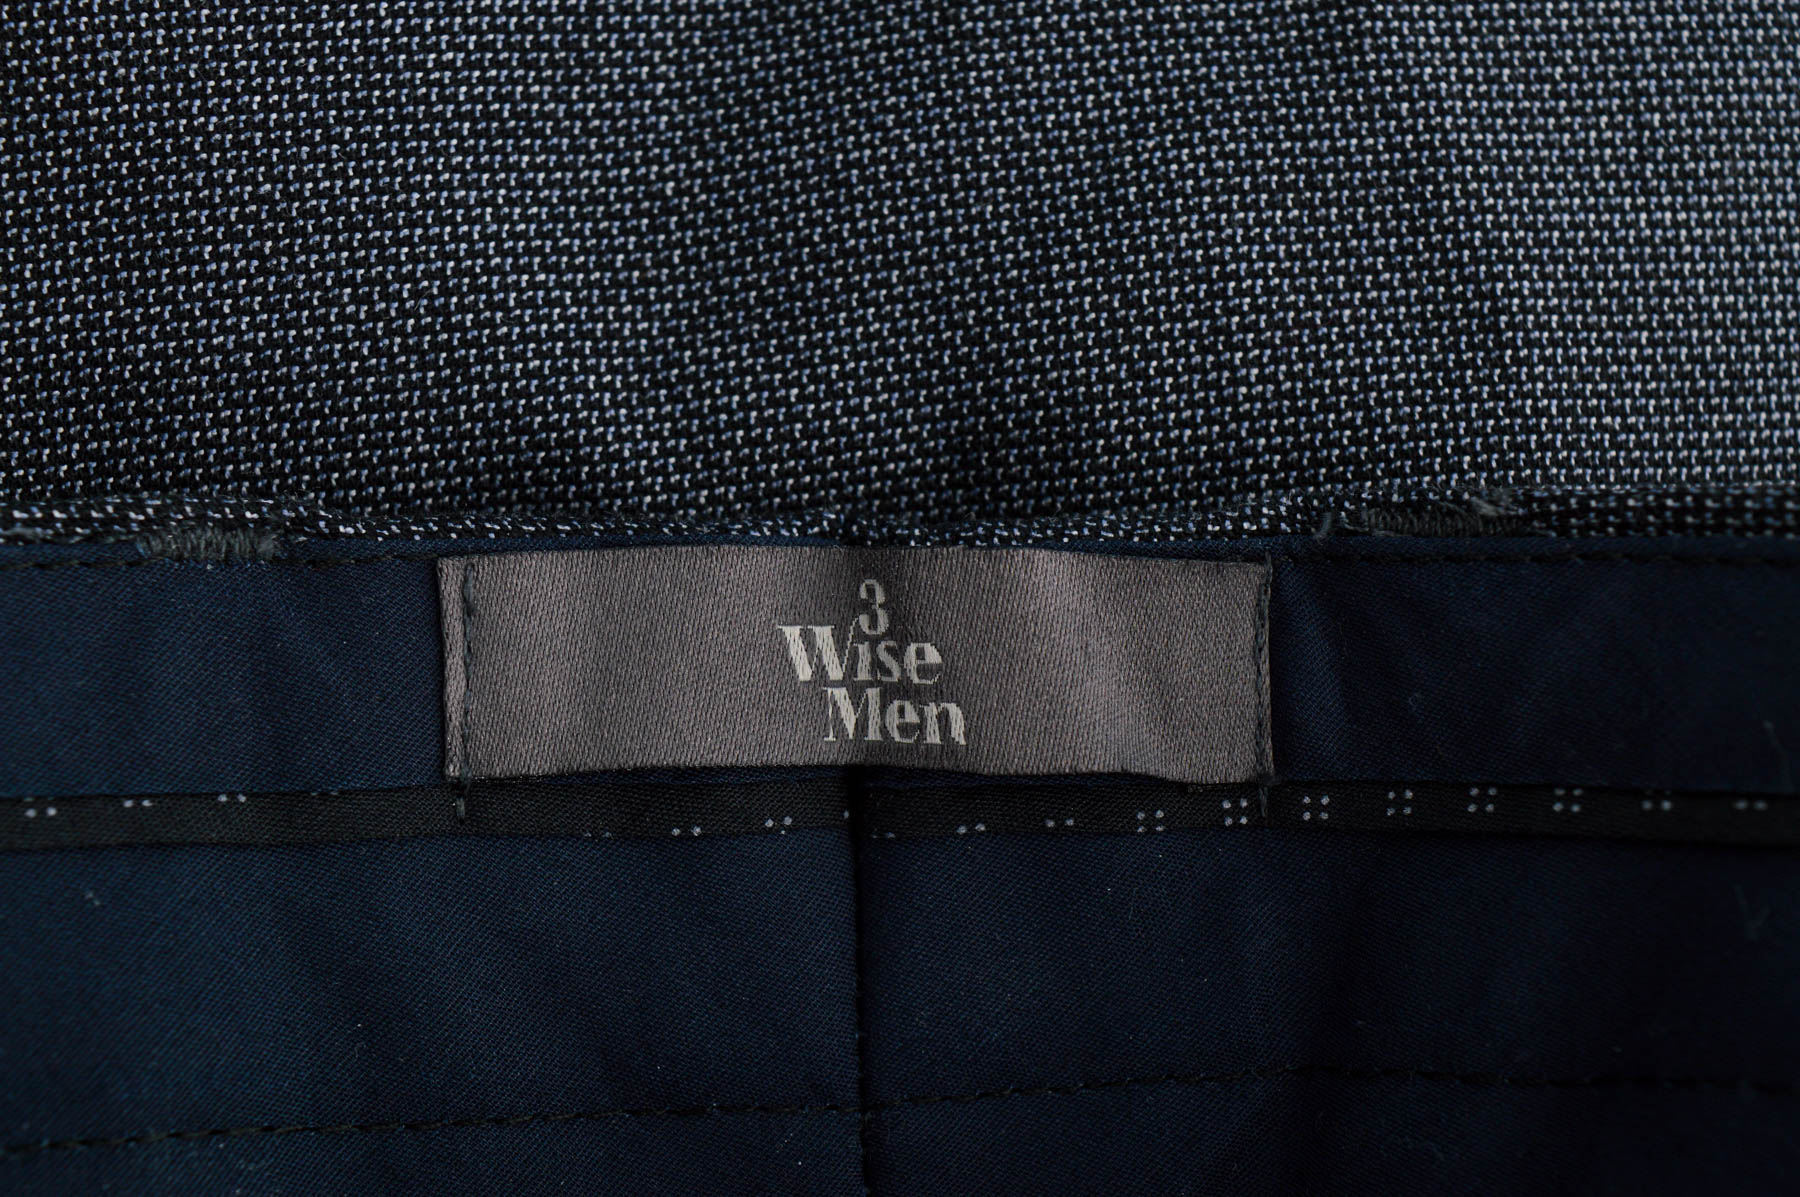 Pantalon pentru bărbați - 3 Wise Men - 2